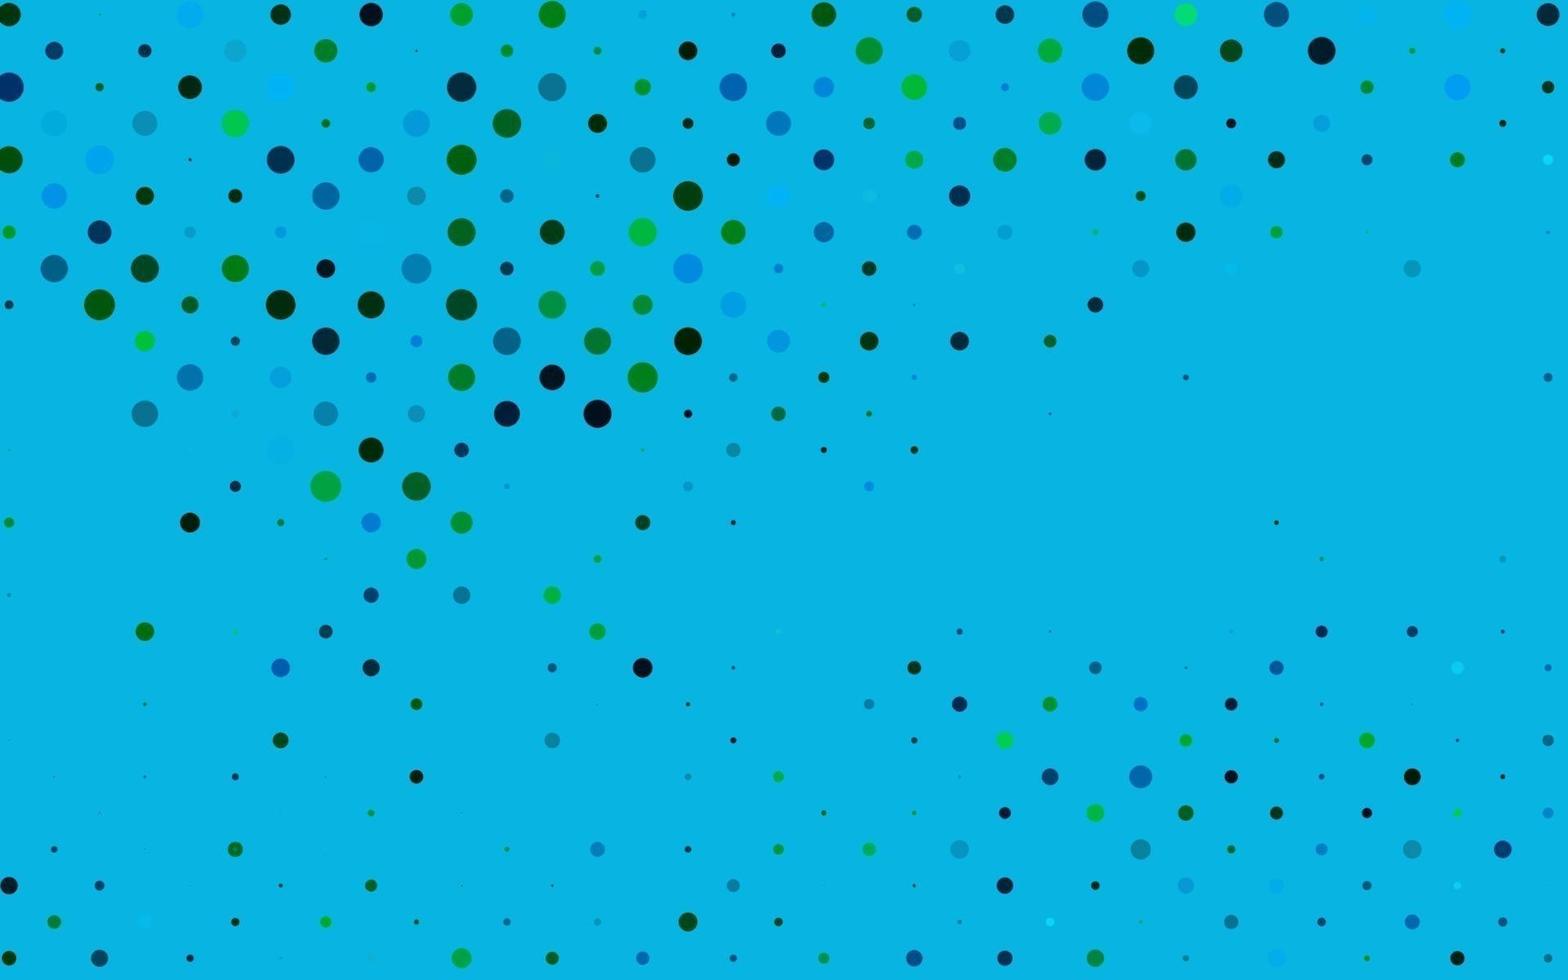 ljusblå, grön vektorbakgrund med bubblor. vektor